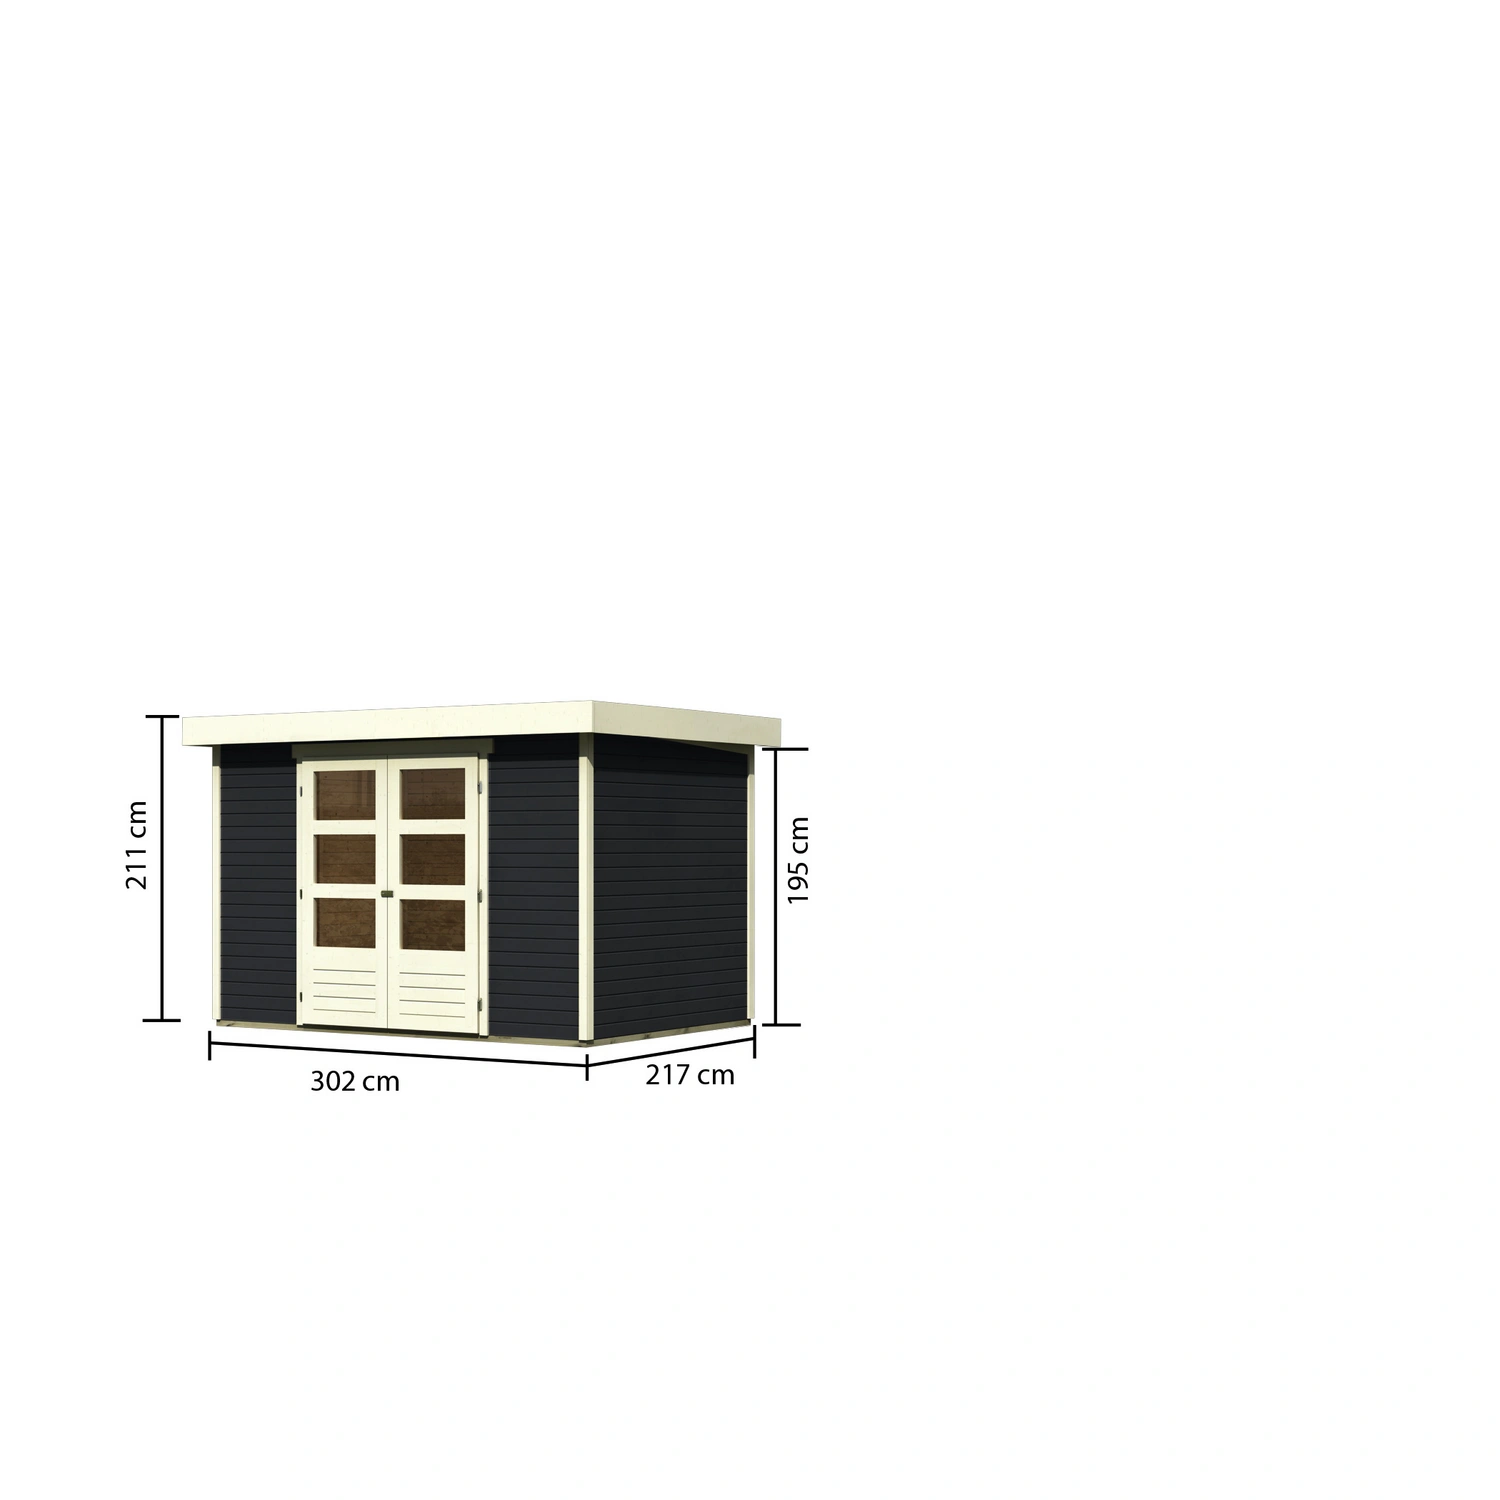 KARIBU BxT: 4«, Gartenhaus »Askola 302 cm Wandstärke: (Außenmaße), 217 19 x mm